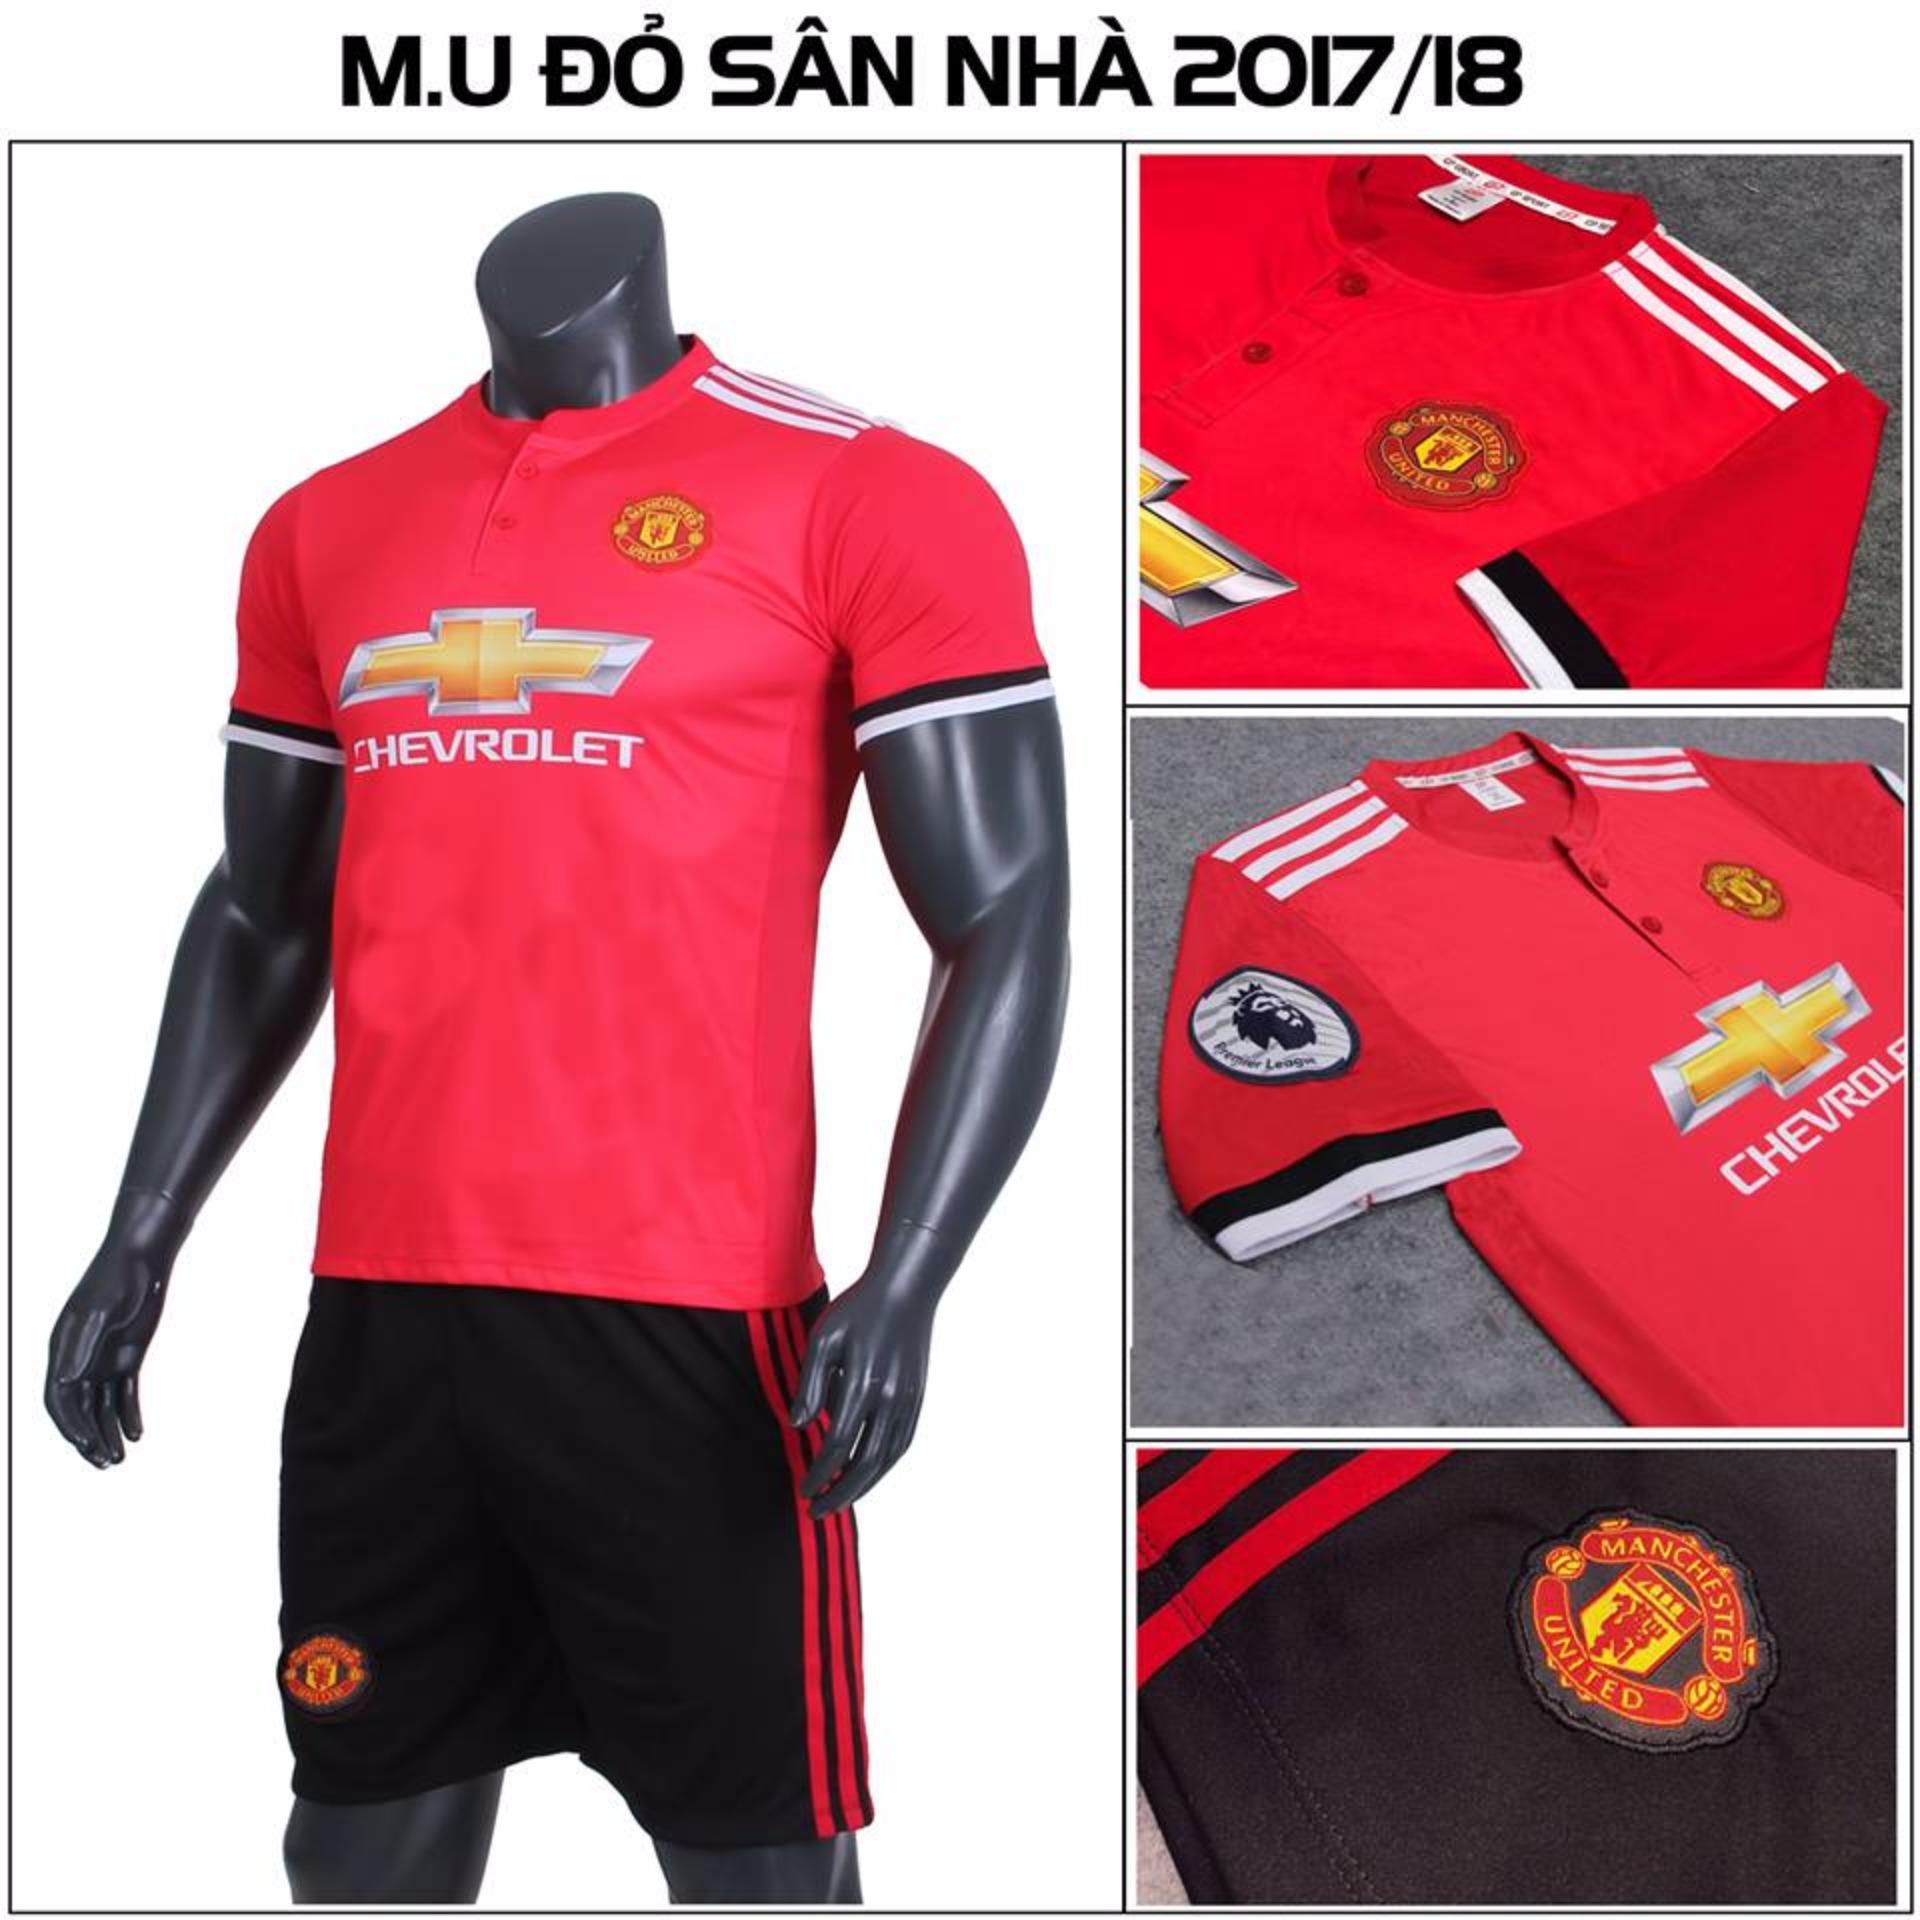 Bộ quần áo đấu MU sân nhà 2017 2018 màu đỏ